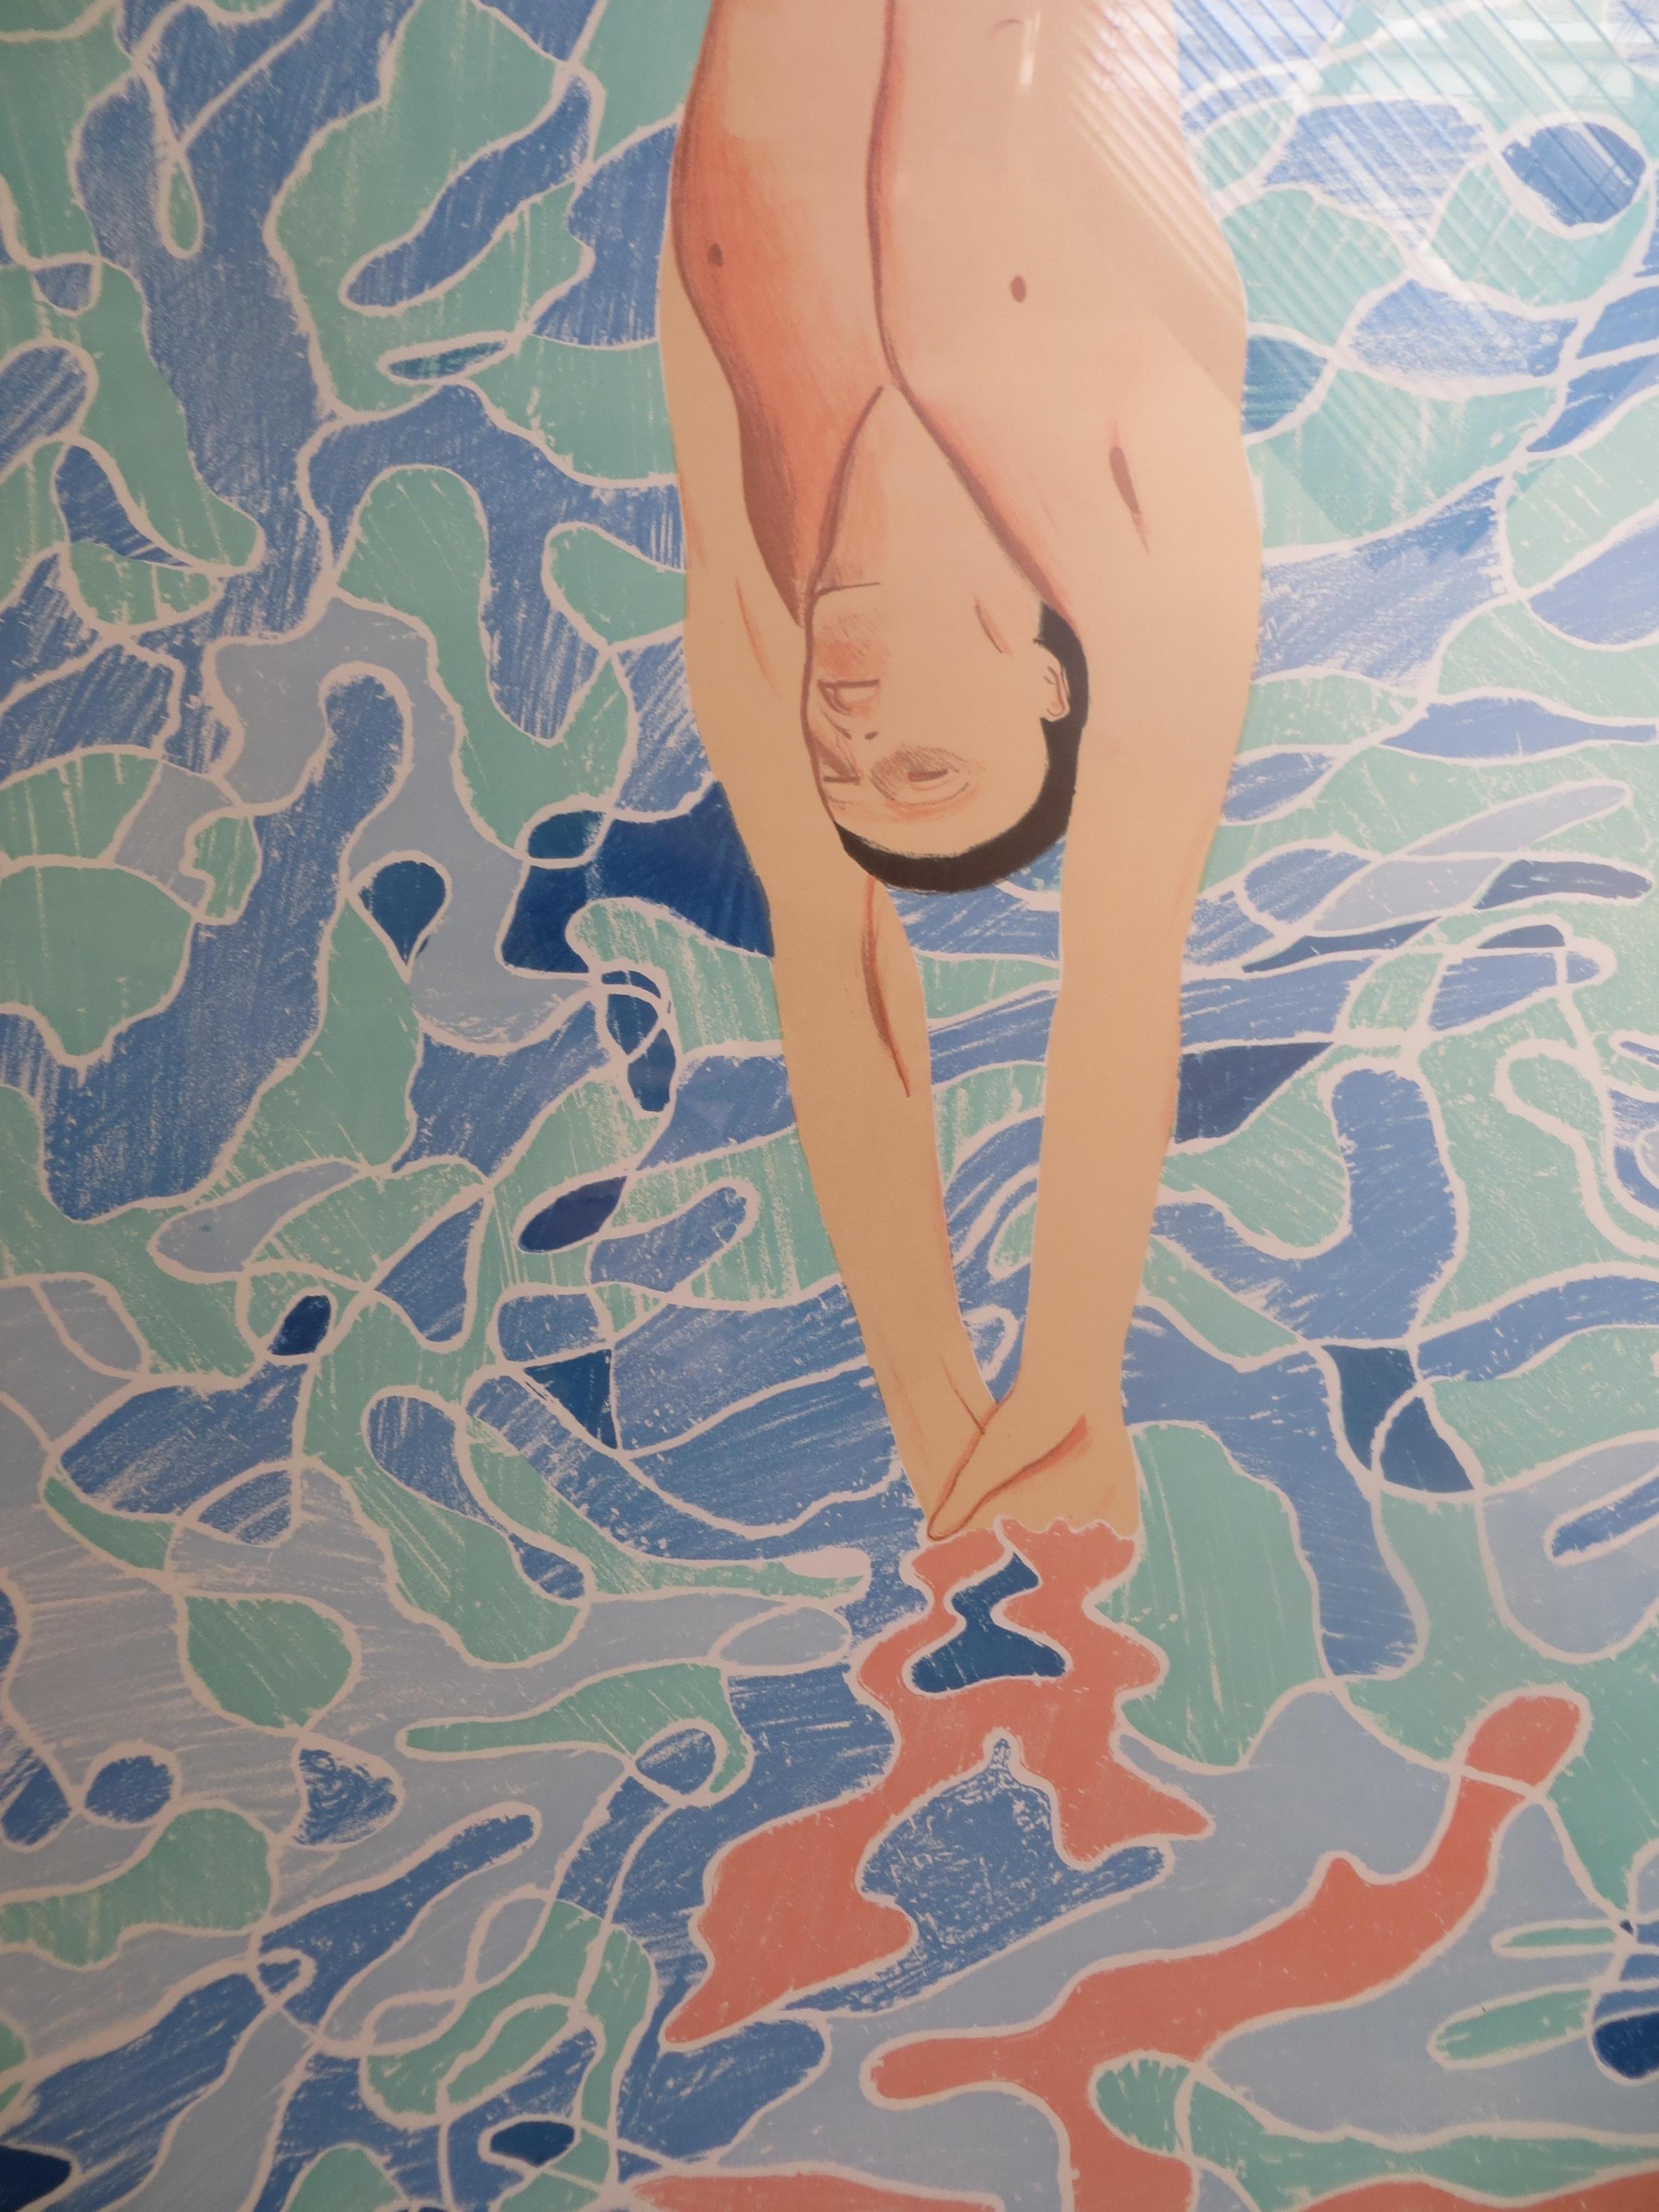 David Hockney, Original  Poster. David Hockney, Olympische Spiele München  Drucken  Plakat, 1972 
David Hockney ( geb. 1937 ) ist ein englischer Maler, Zeichner, Grafiker, Bühnenbildner und Fotograf. Er leistet einen wichtigen Beitrag zur